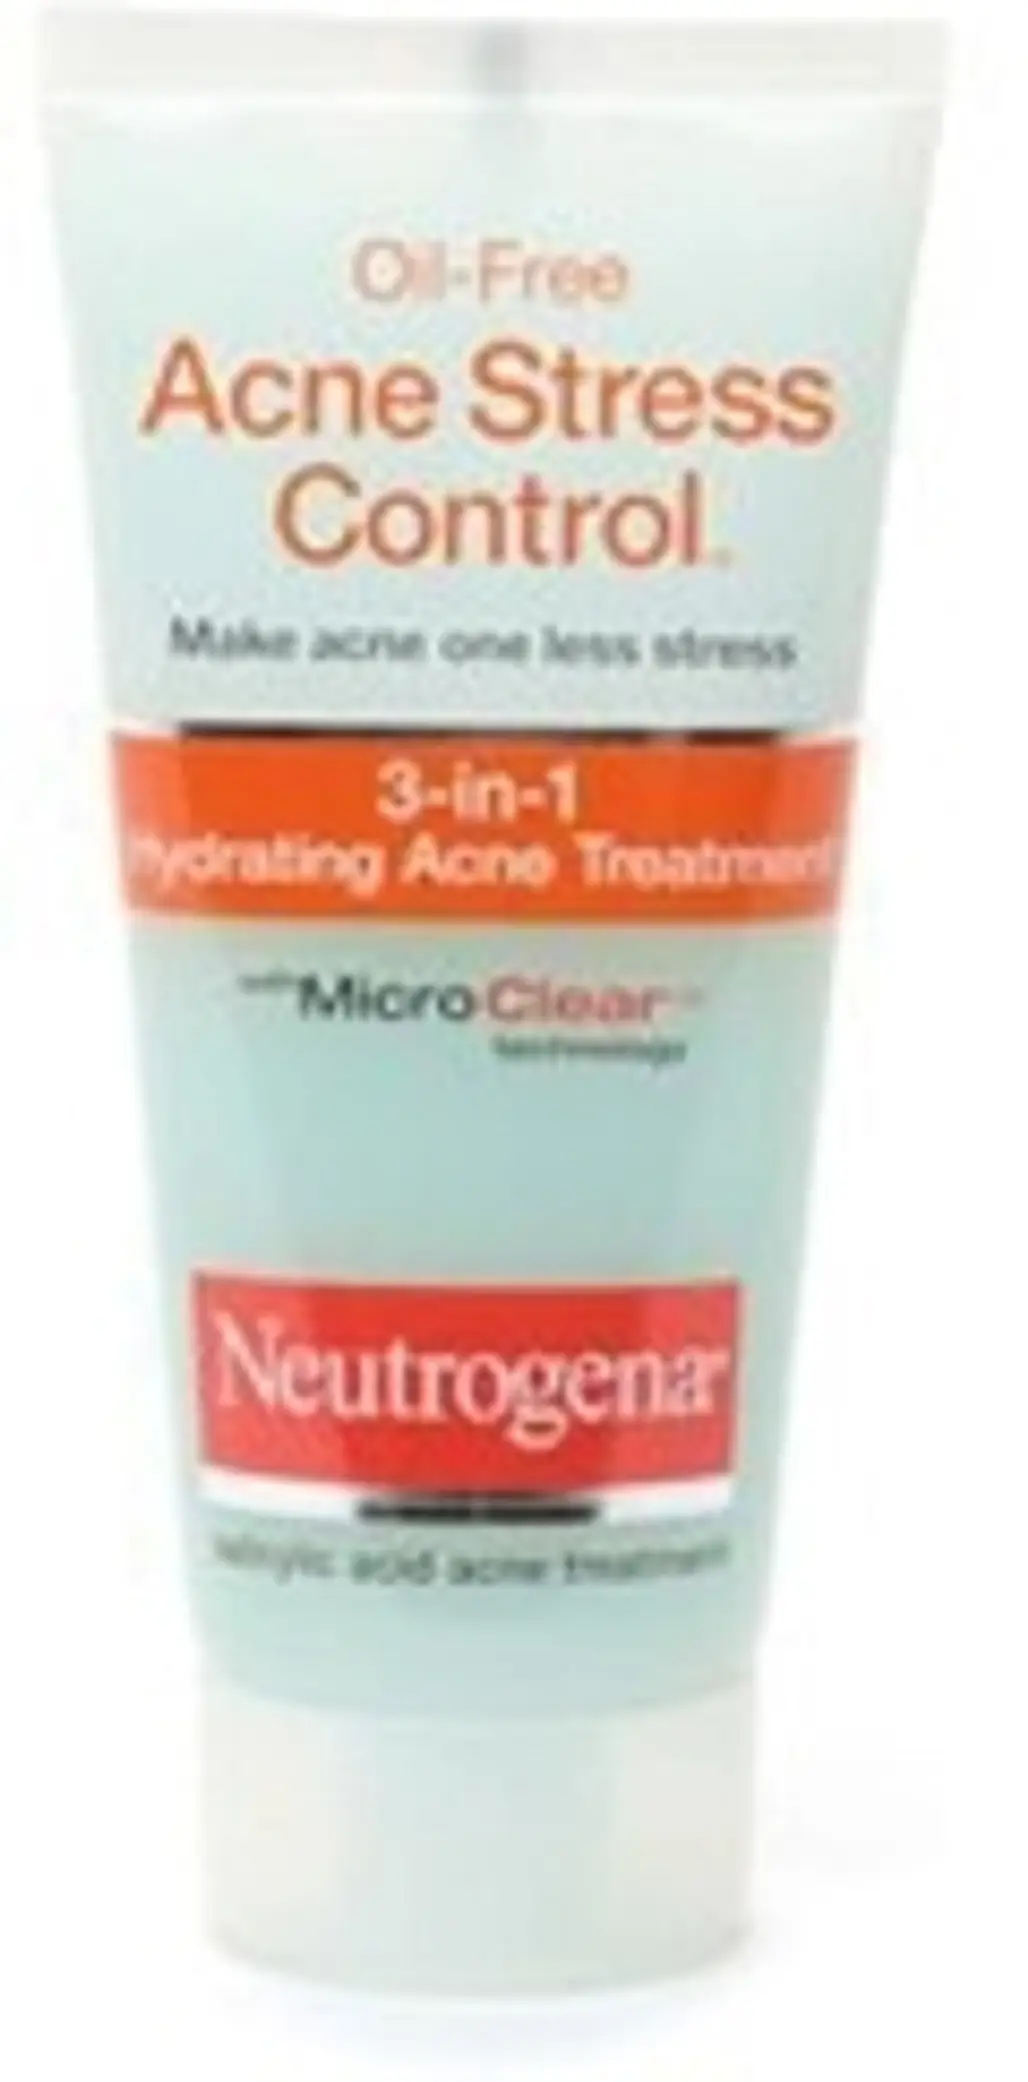 Neutrogena Oil-Free Acne Stress Control